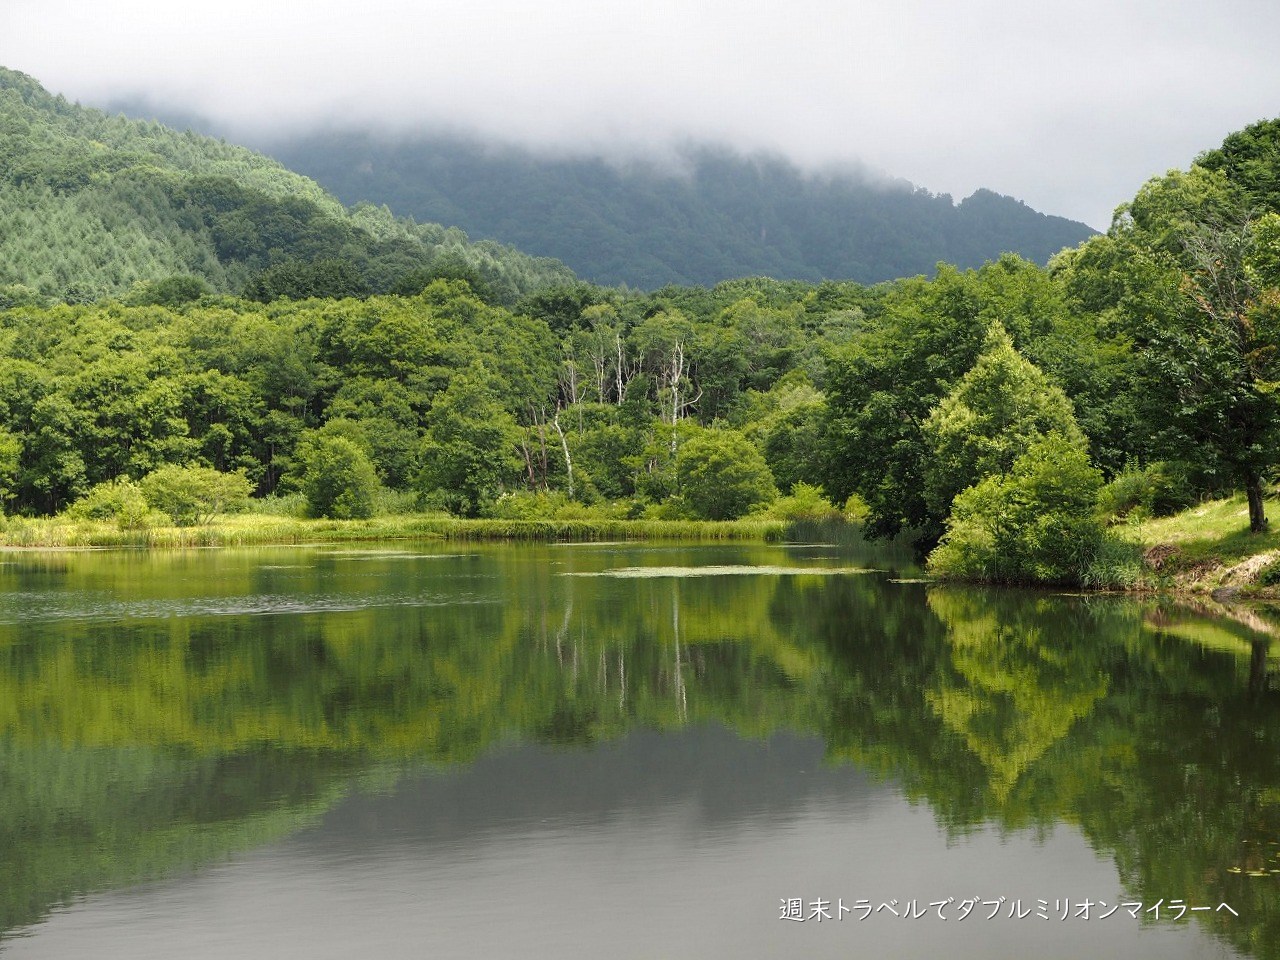 長野県戸隠の 鏡池 と 戸隠森林植物園 で自然の景観を見ながら森林浴